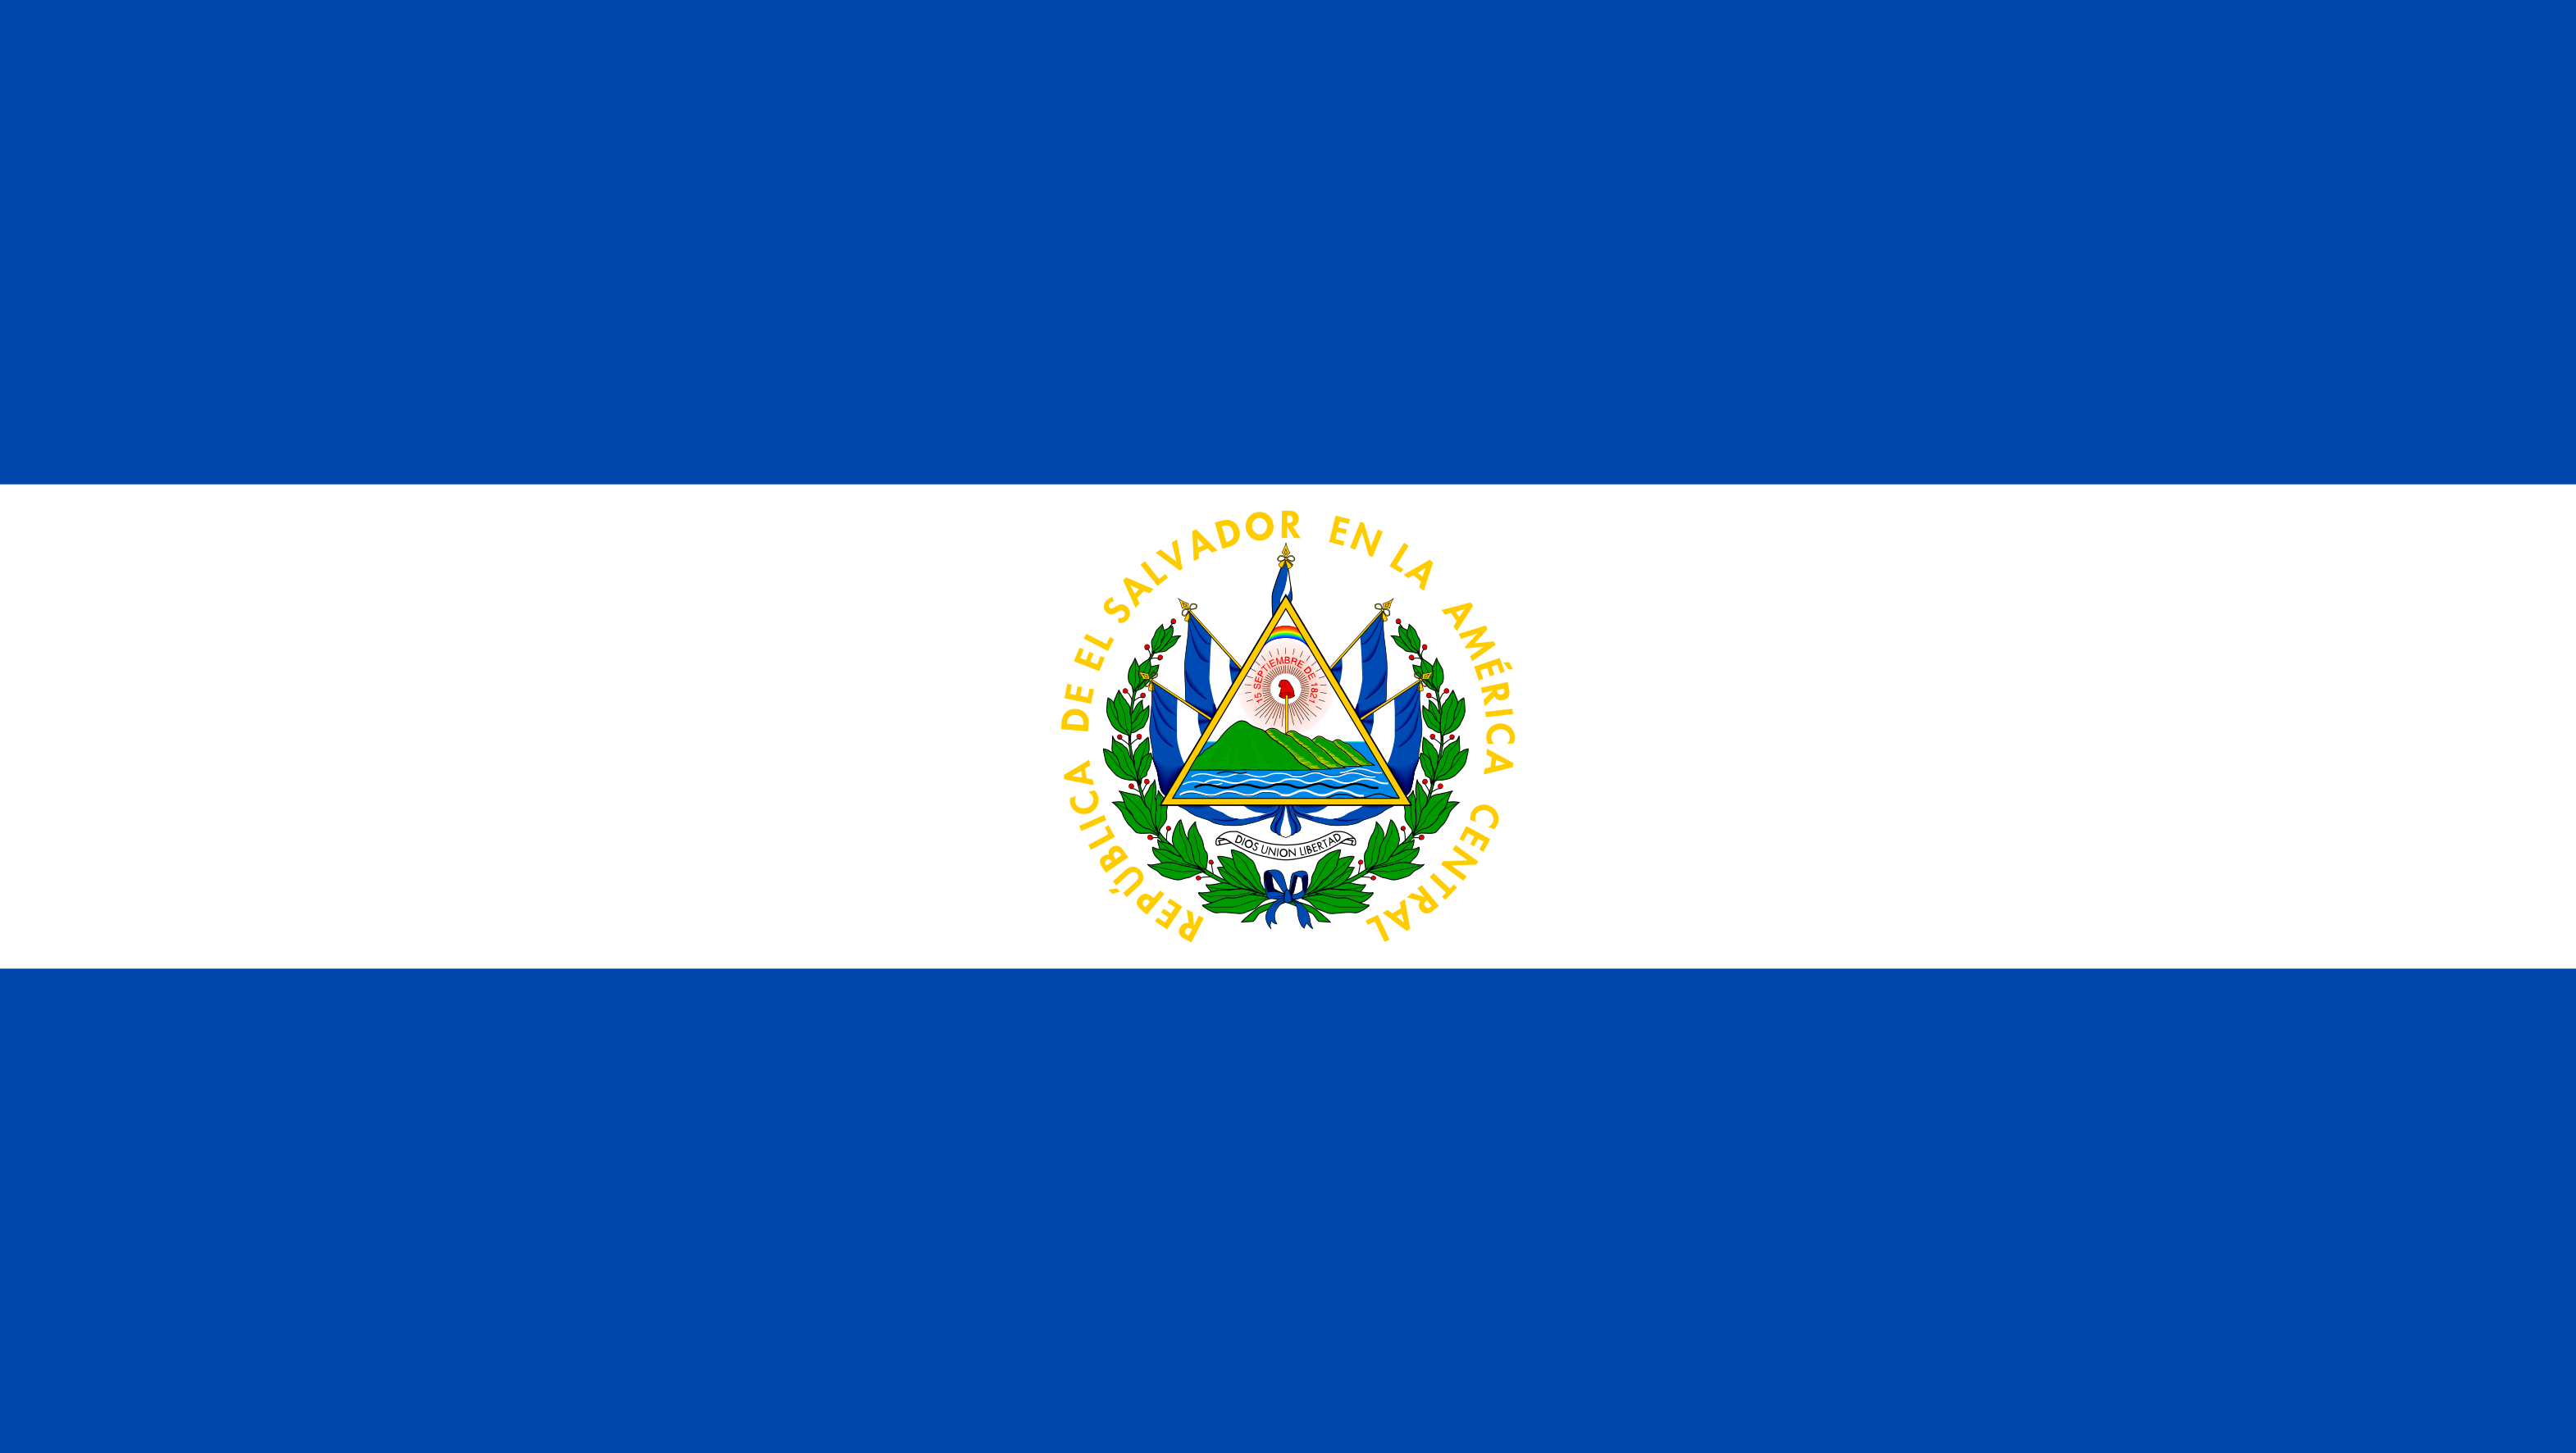 El Salvador Flag Image - Free Download